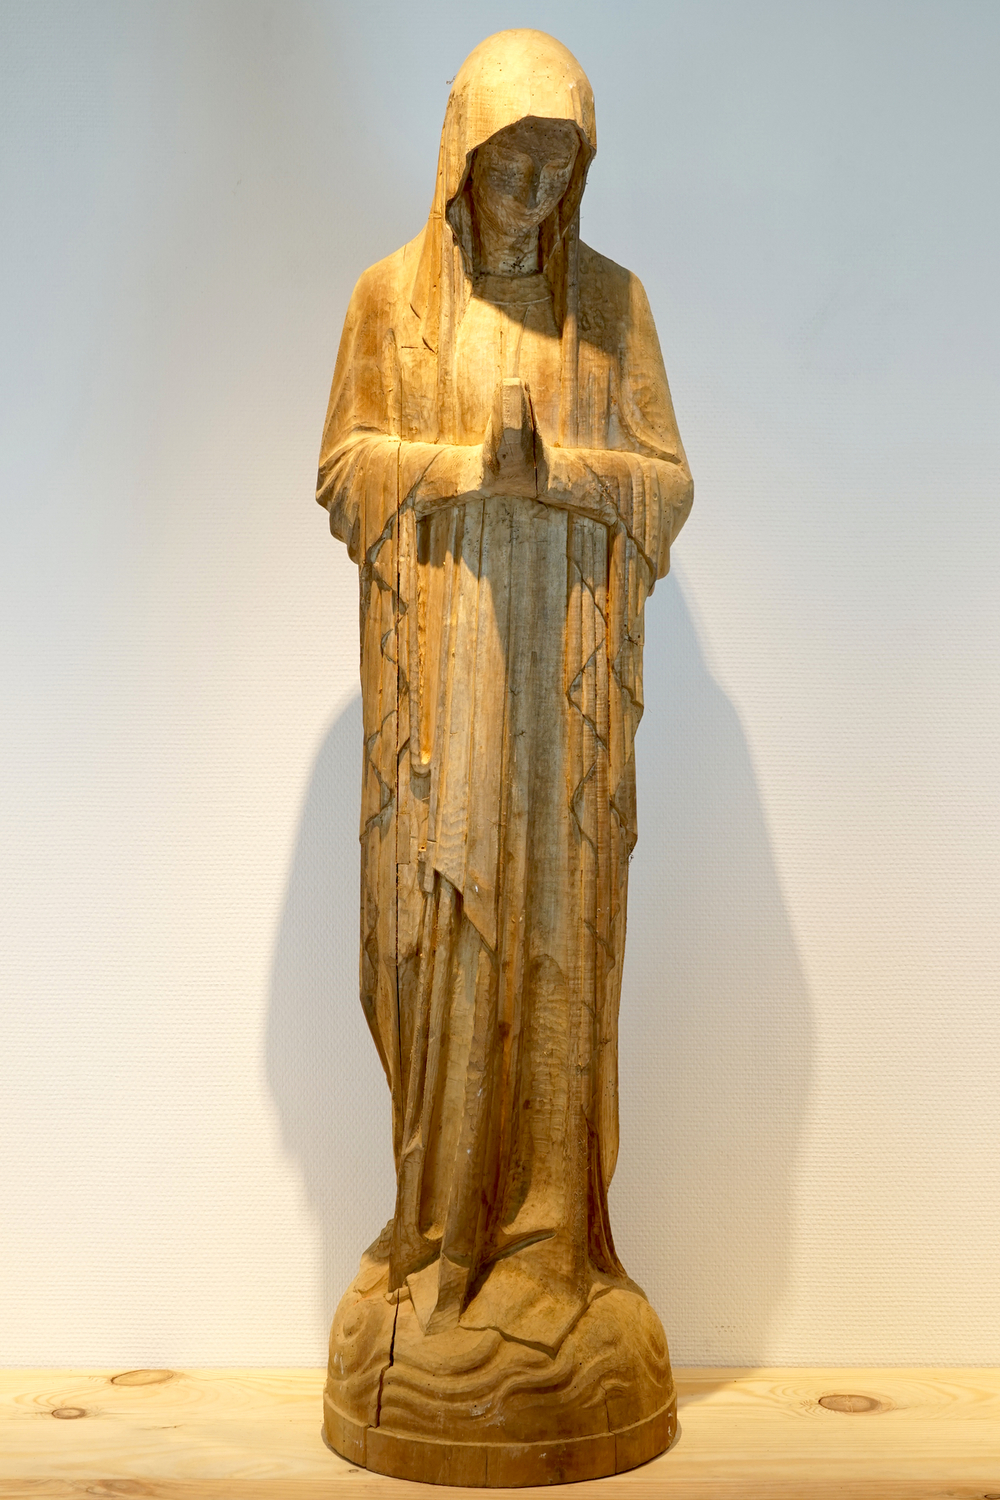 Een gestoken houten figuur van Maria in art-decostijl, 20e eeuw, Brugge